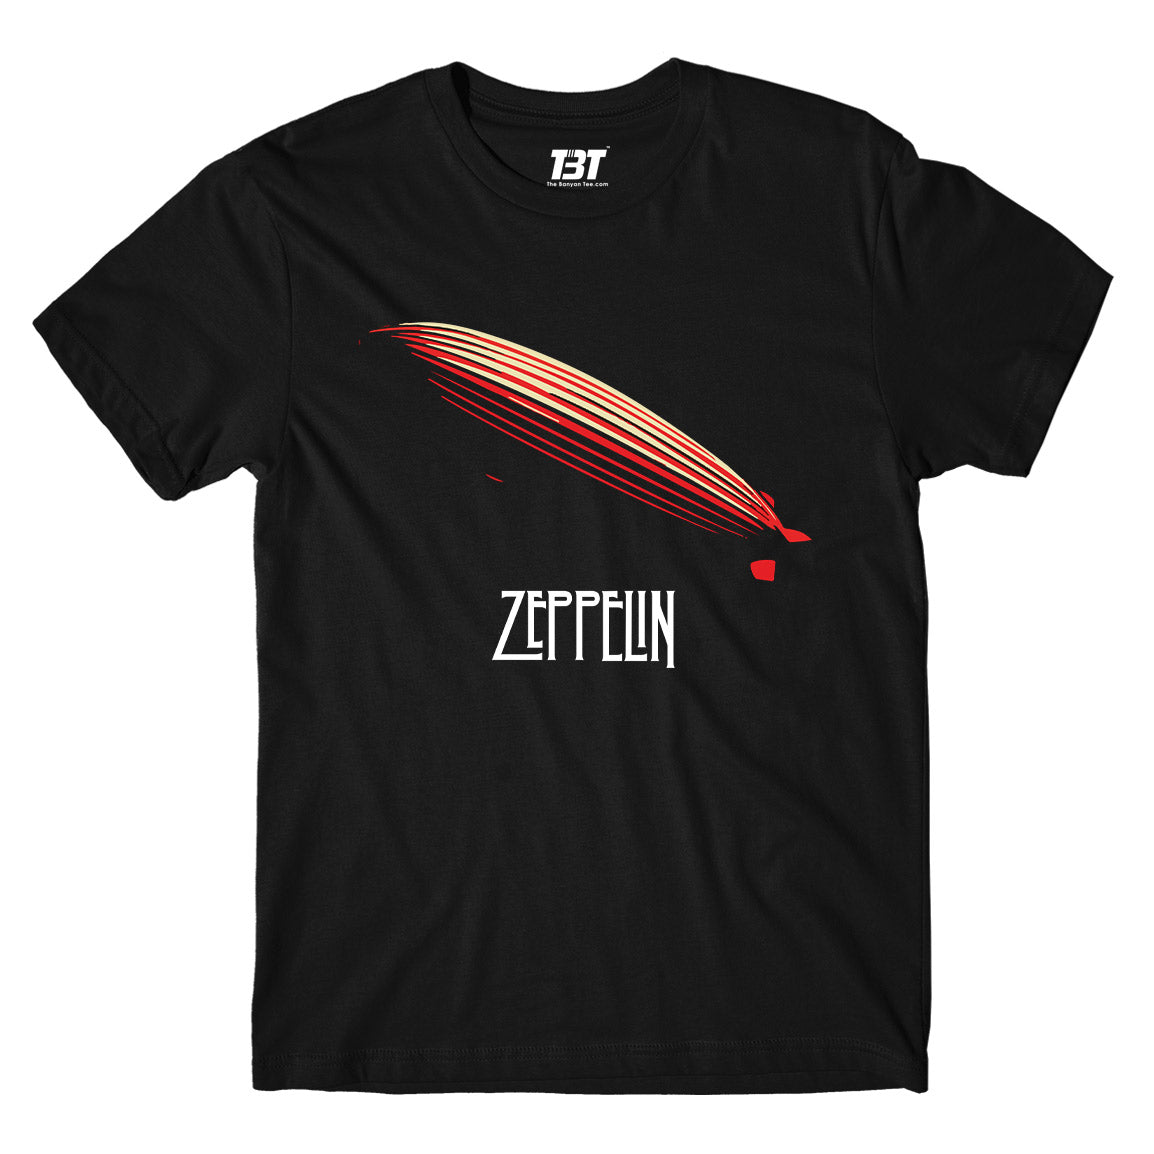 Led Zeppelin T-shirt - Zeppelin T-shirt The Banyan Tee TBT